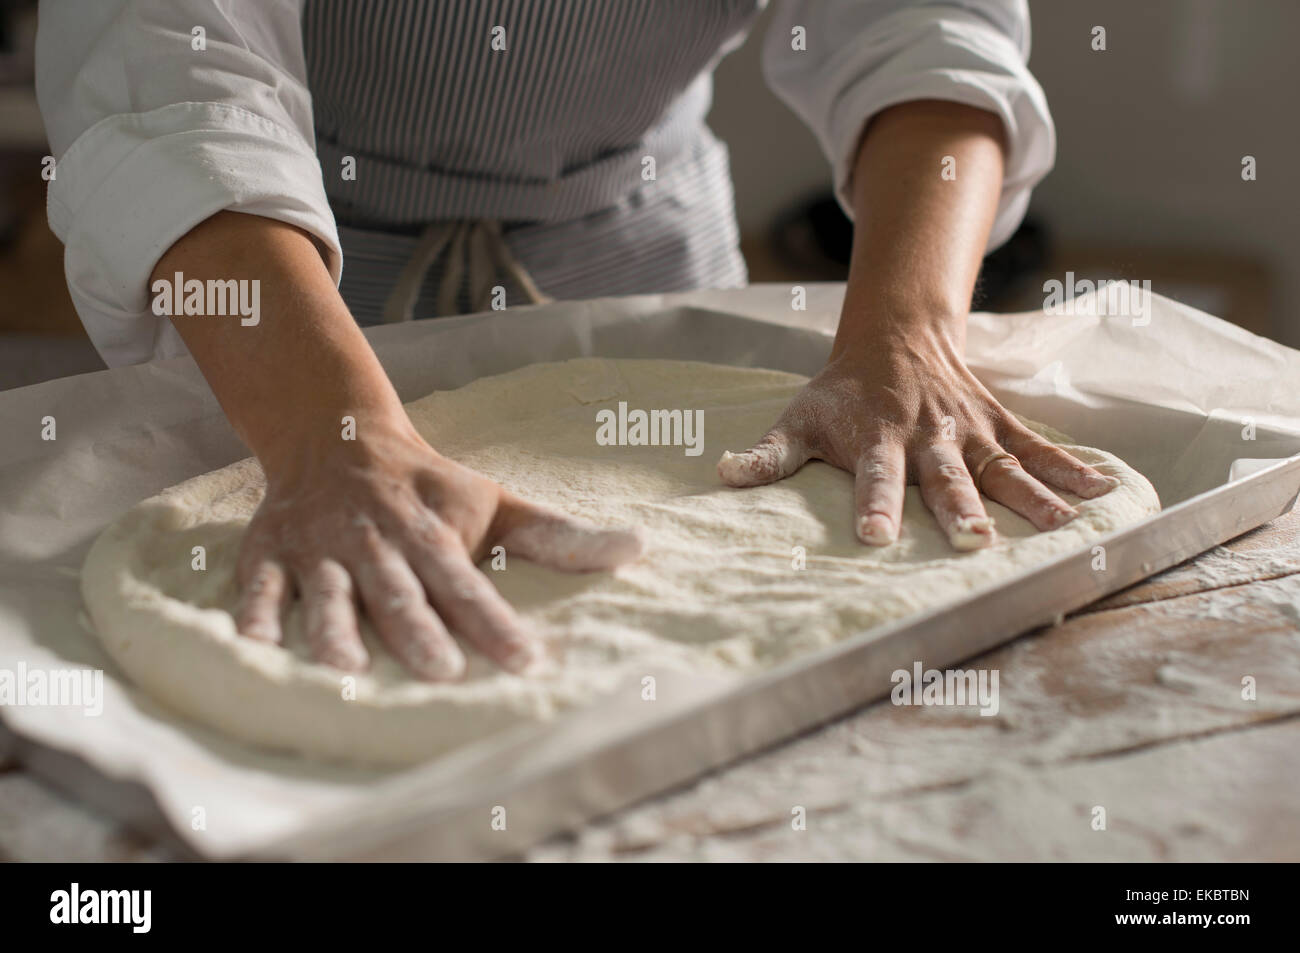 Baker preparing gluten-free dough for baking Stock Photo